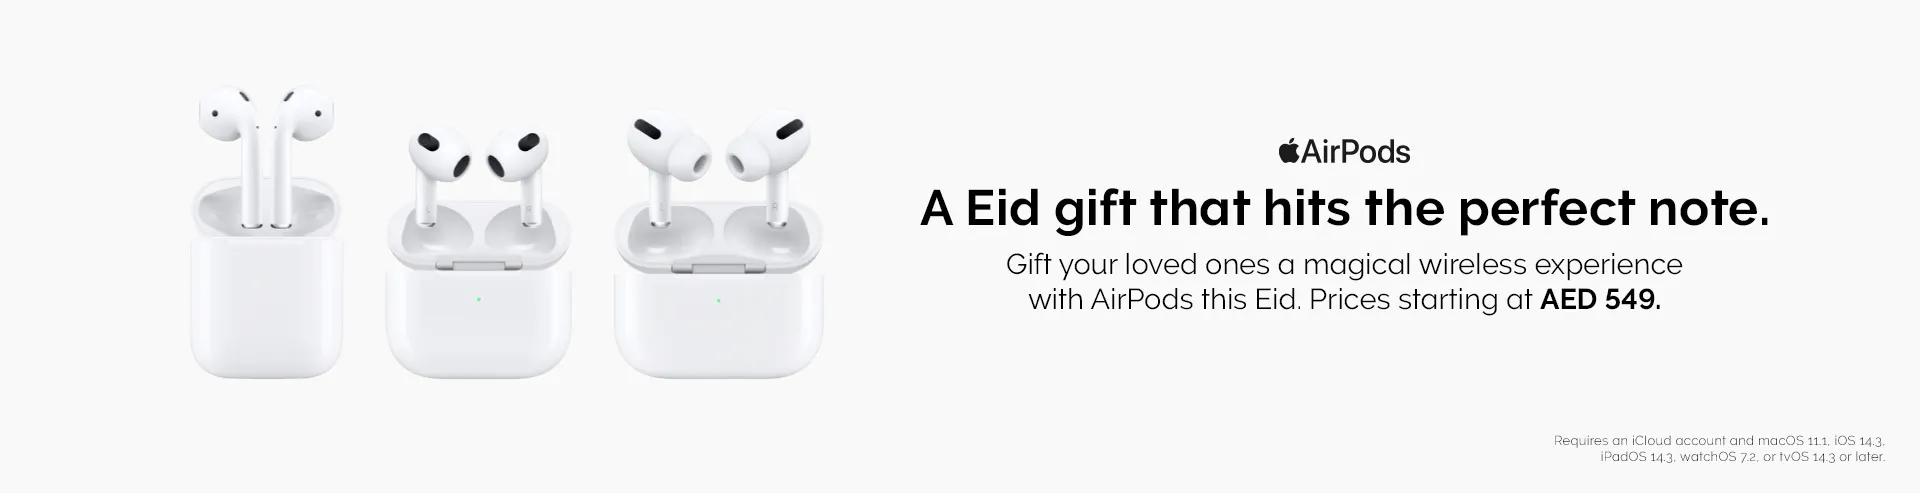 Full-Width-Large-AirPods-Eid-Gifting-UAE-Desktop.webp